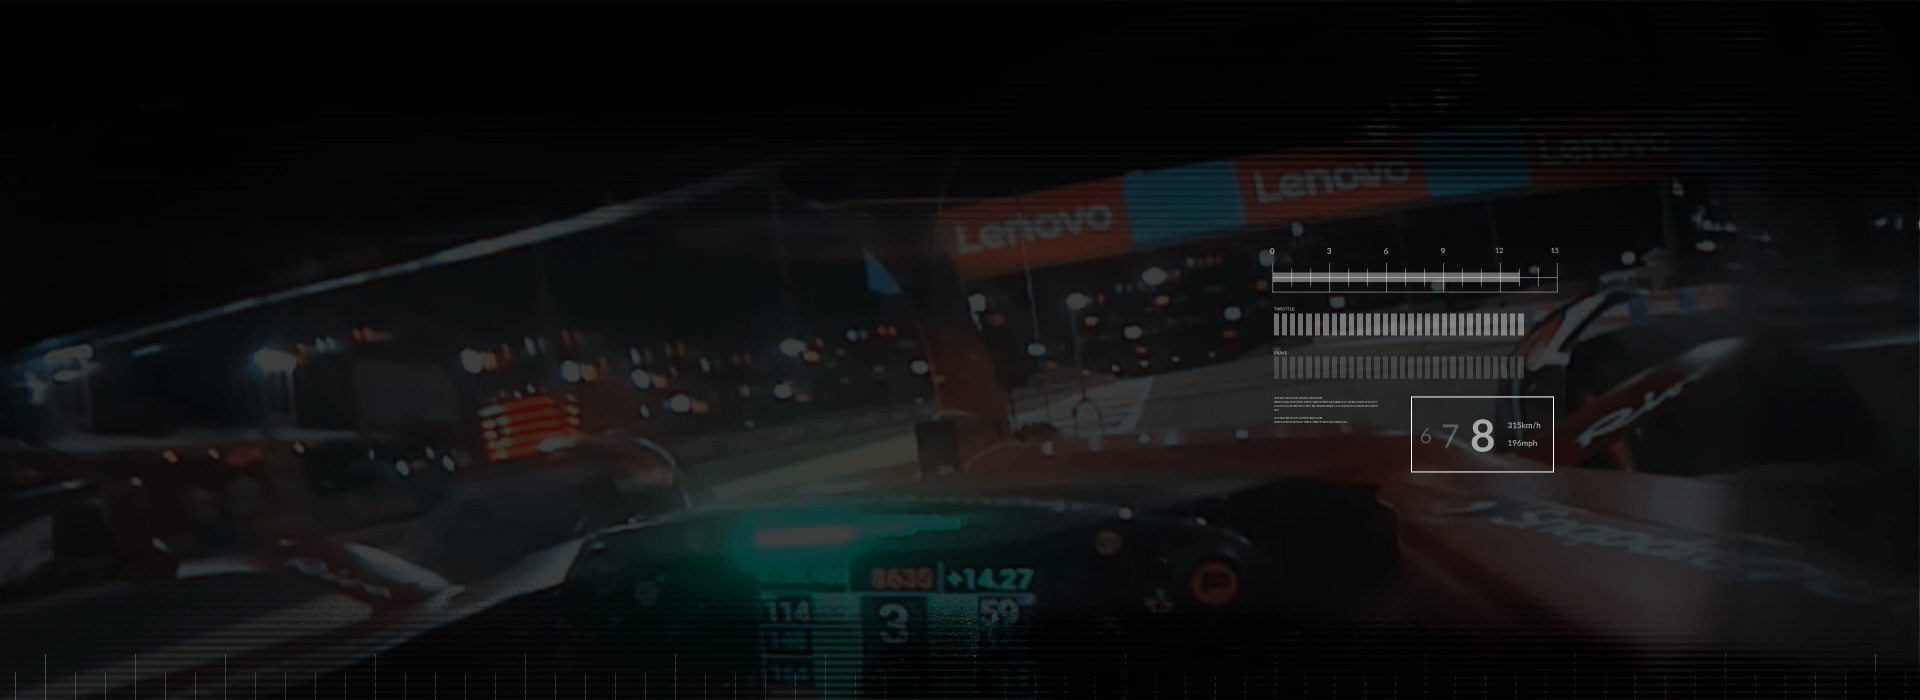 Prospettiva interna di un pilota di F1 che passa sotto gli striscioni Lenovo su una pista